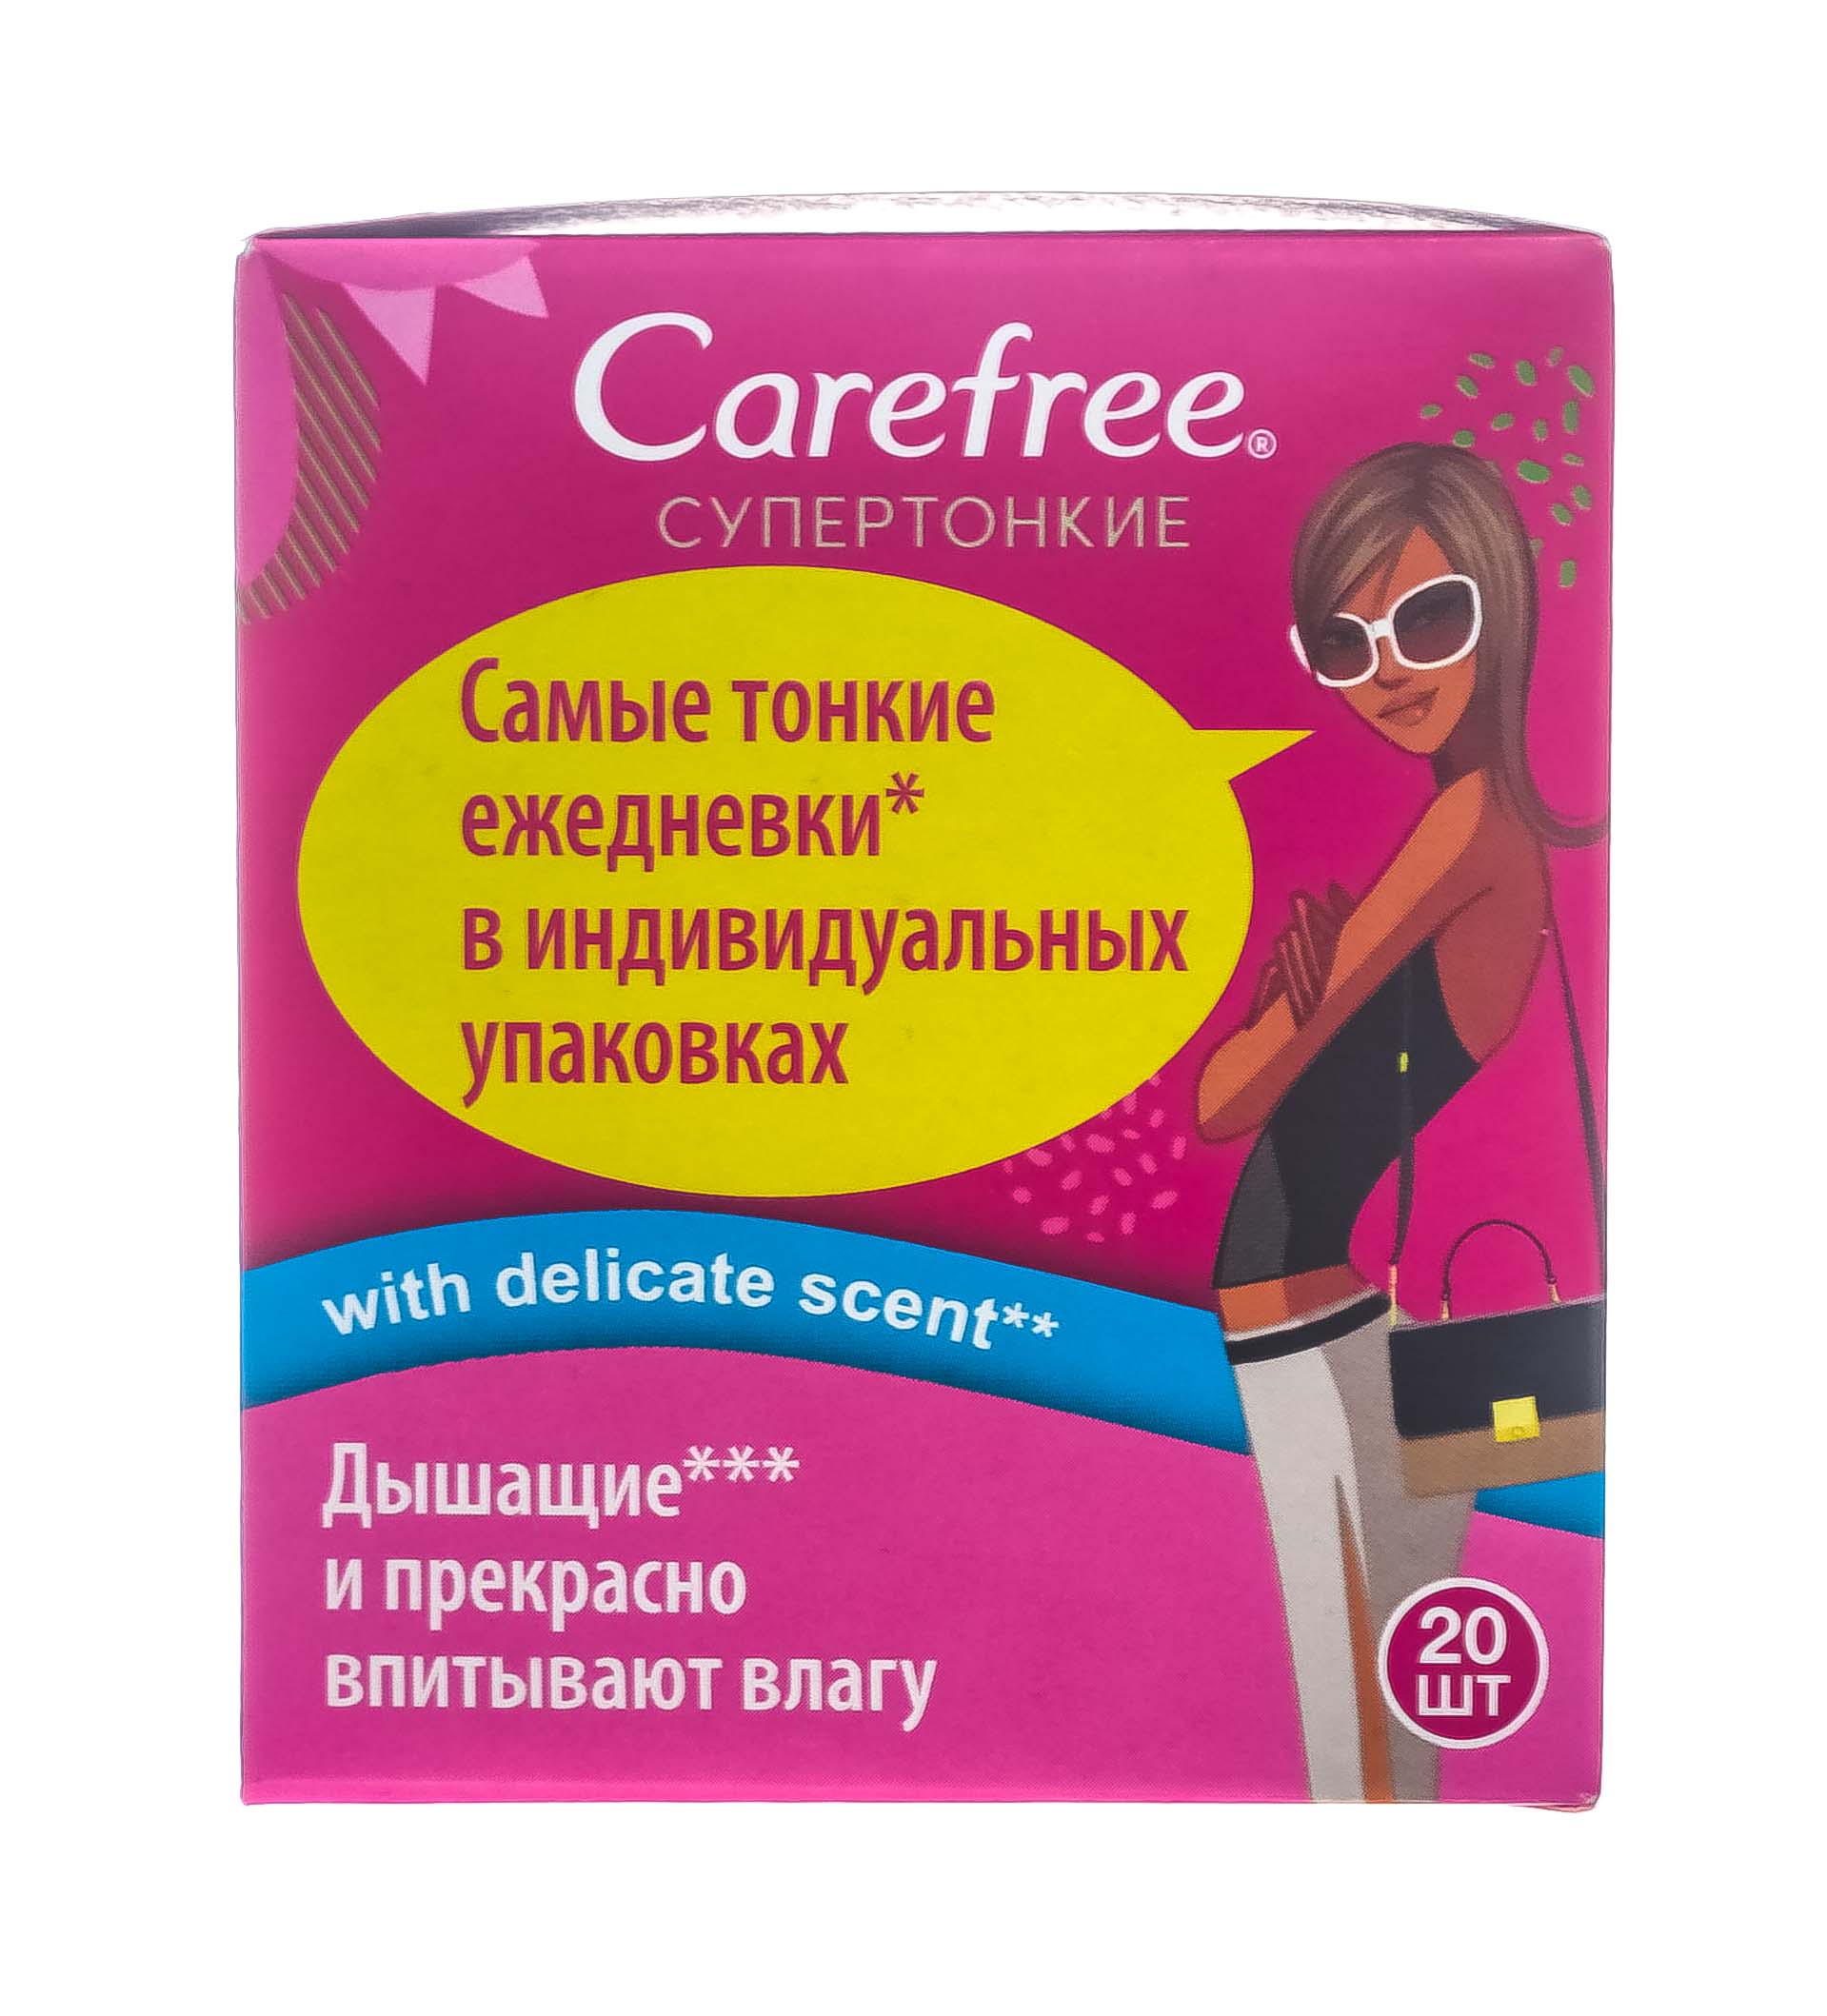 Carefree Ежедневные прокладки в индивидуальной упаковке, 20 шт (Carefree, Ежедневные) от Socolor